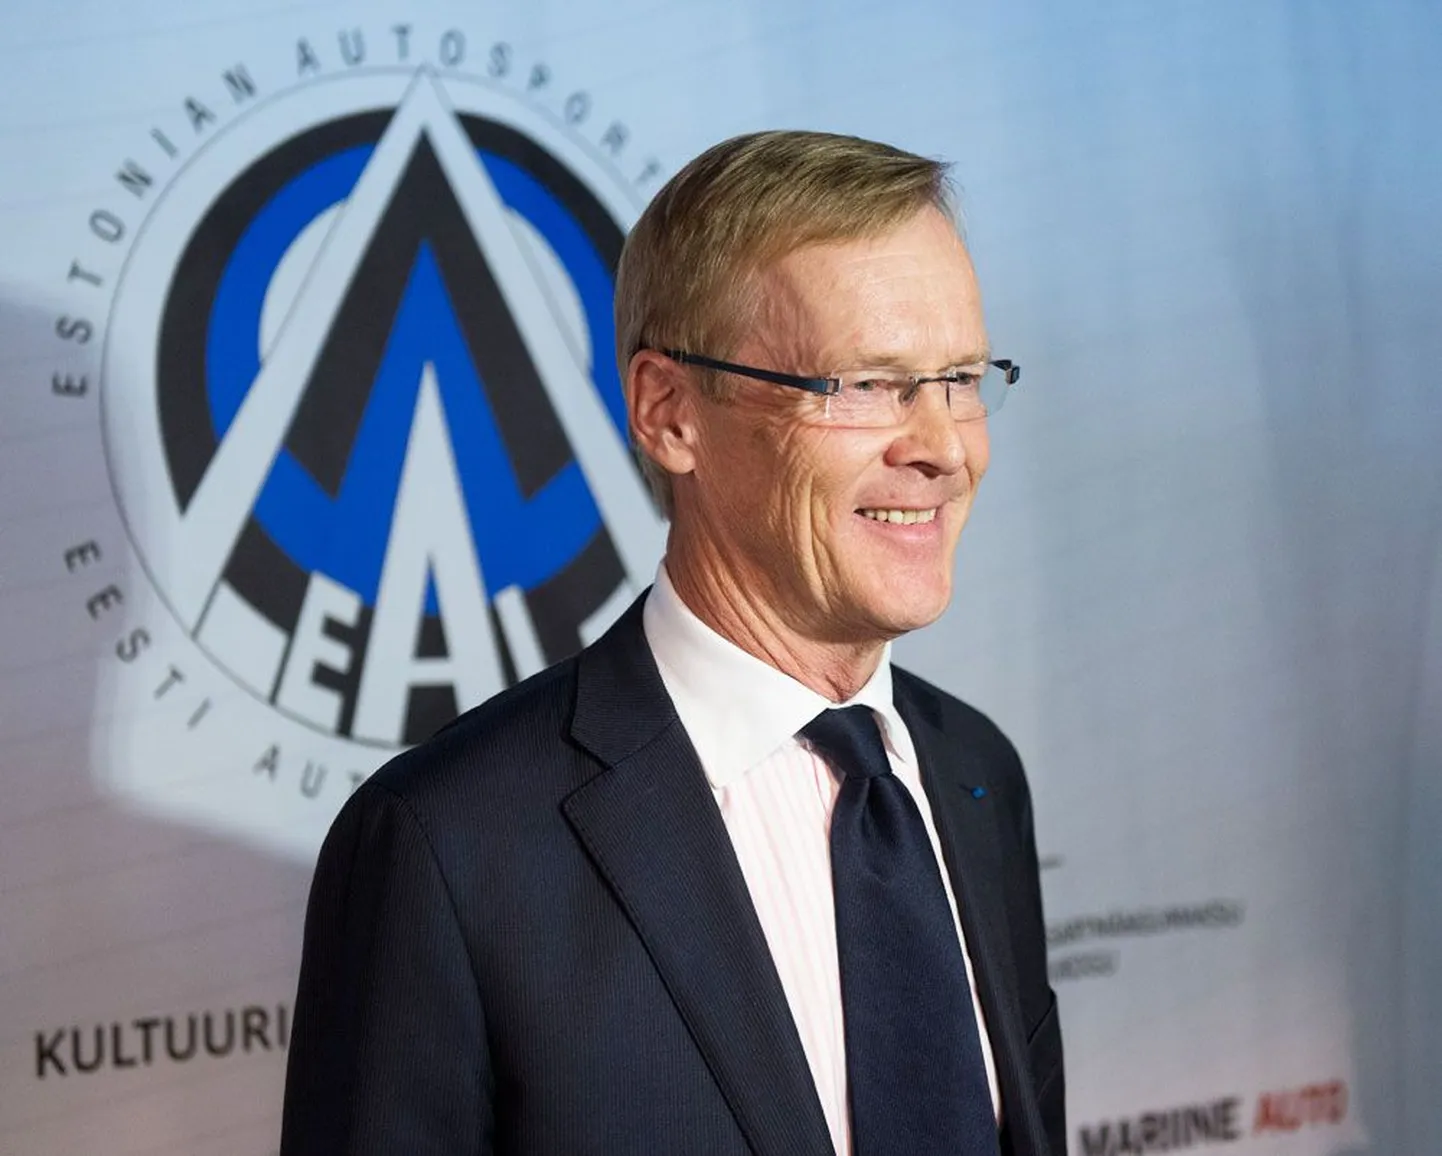 Eesti Autospordi Liidu uus president Ari Vatanen on esimene välismaalane, kes mõnda siinset alaliitu juhib.